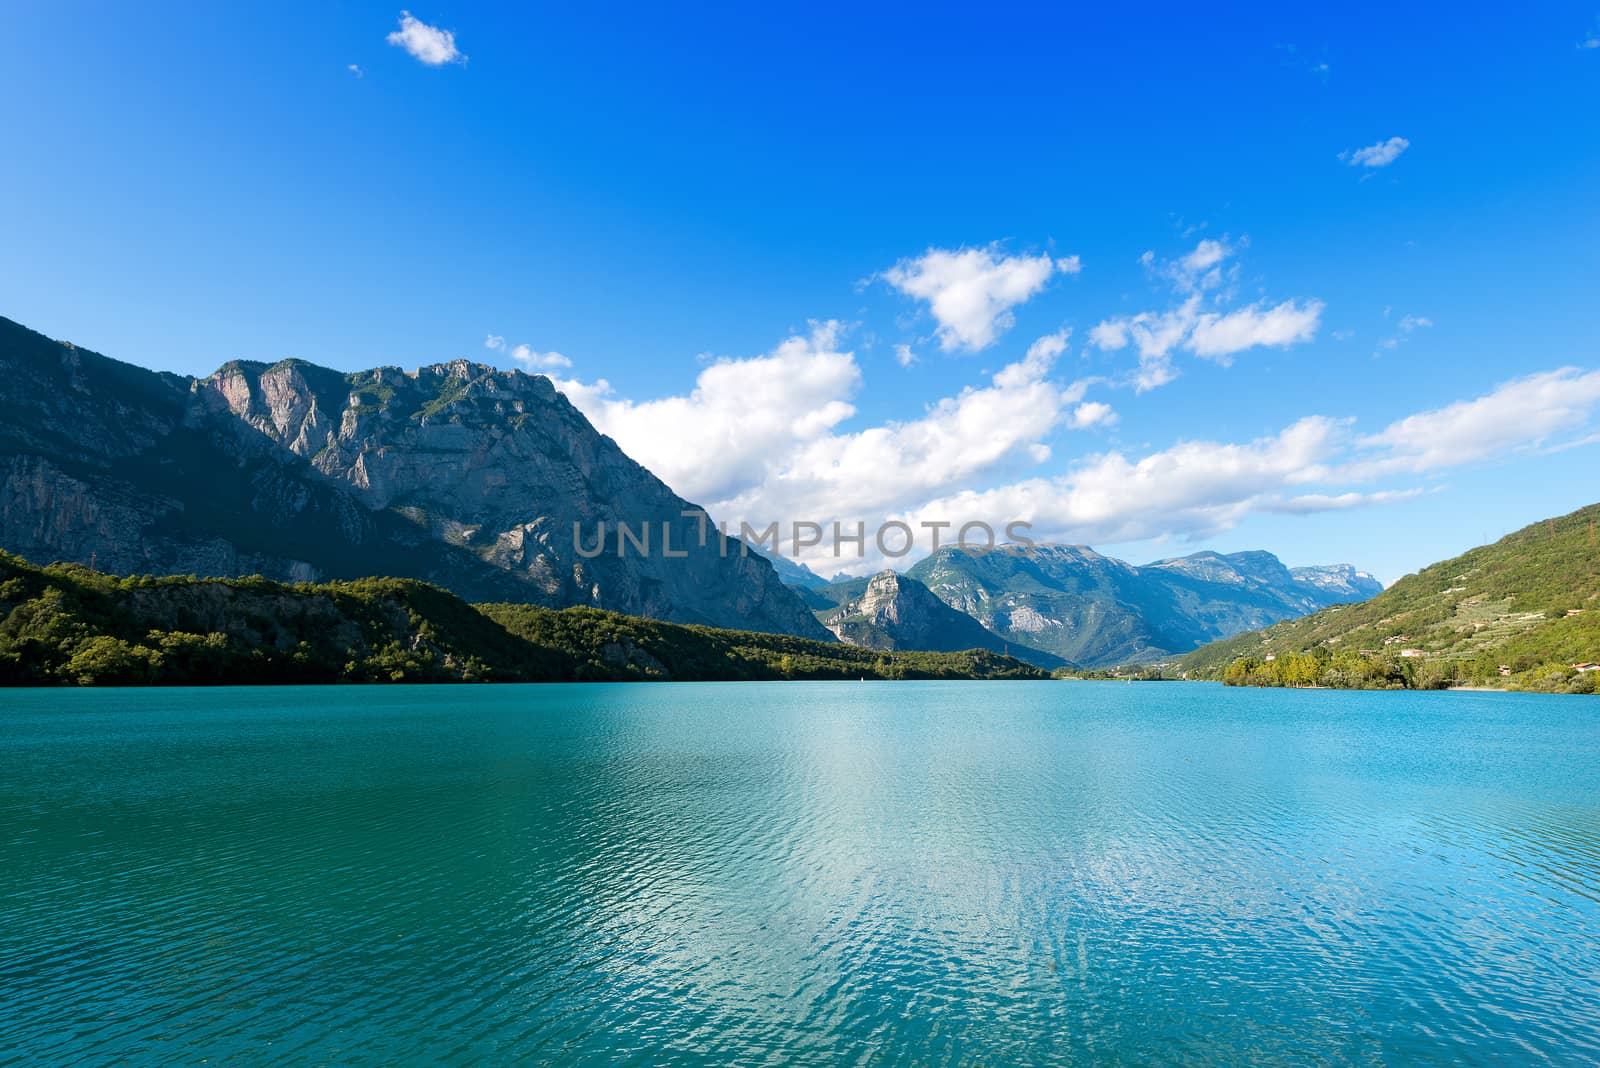 Lago di Cavedine (Cavedine Lake) small alpine lake in Trentino Alto Adige, Italy, Europe